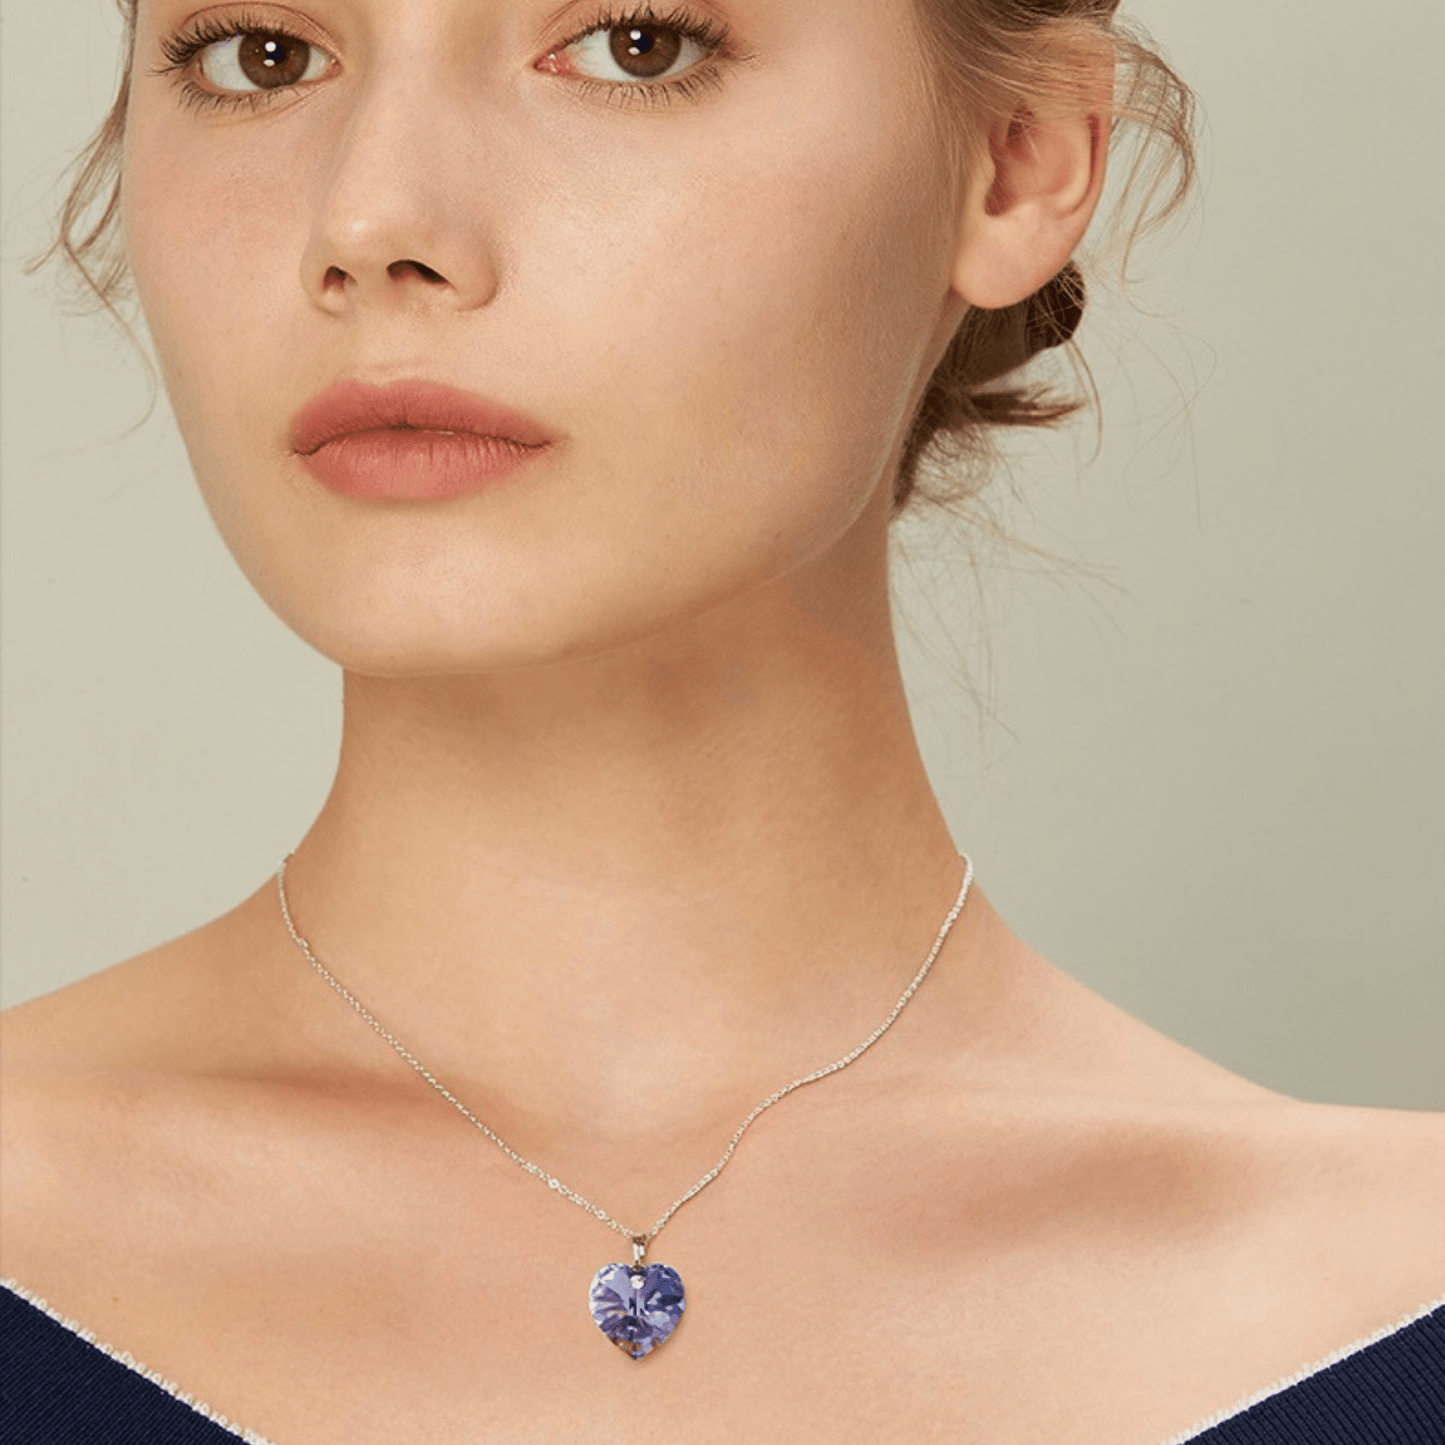 Elegant charming amethyst crystal necklace